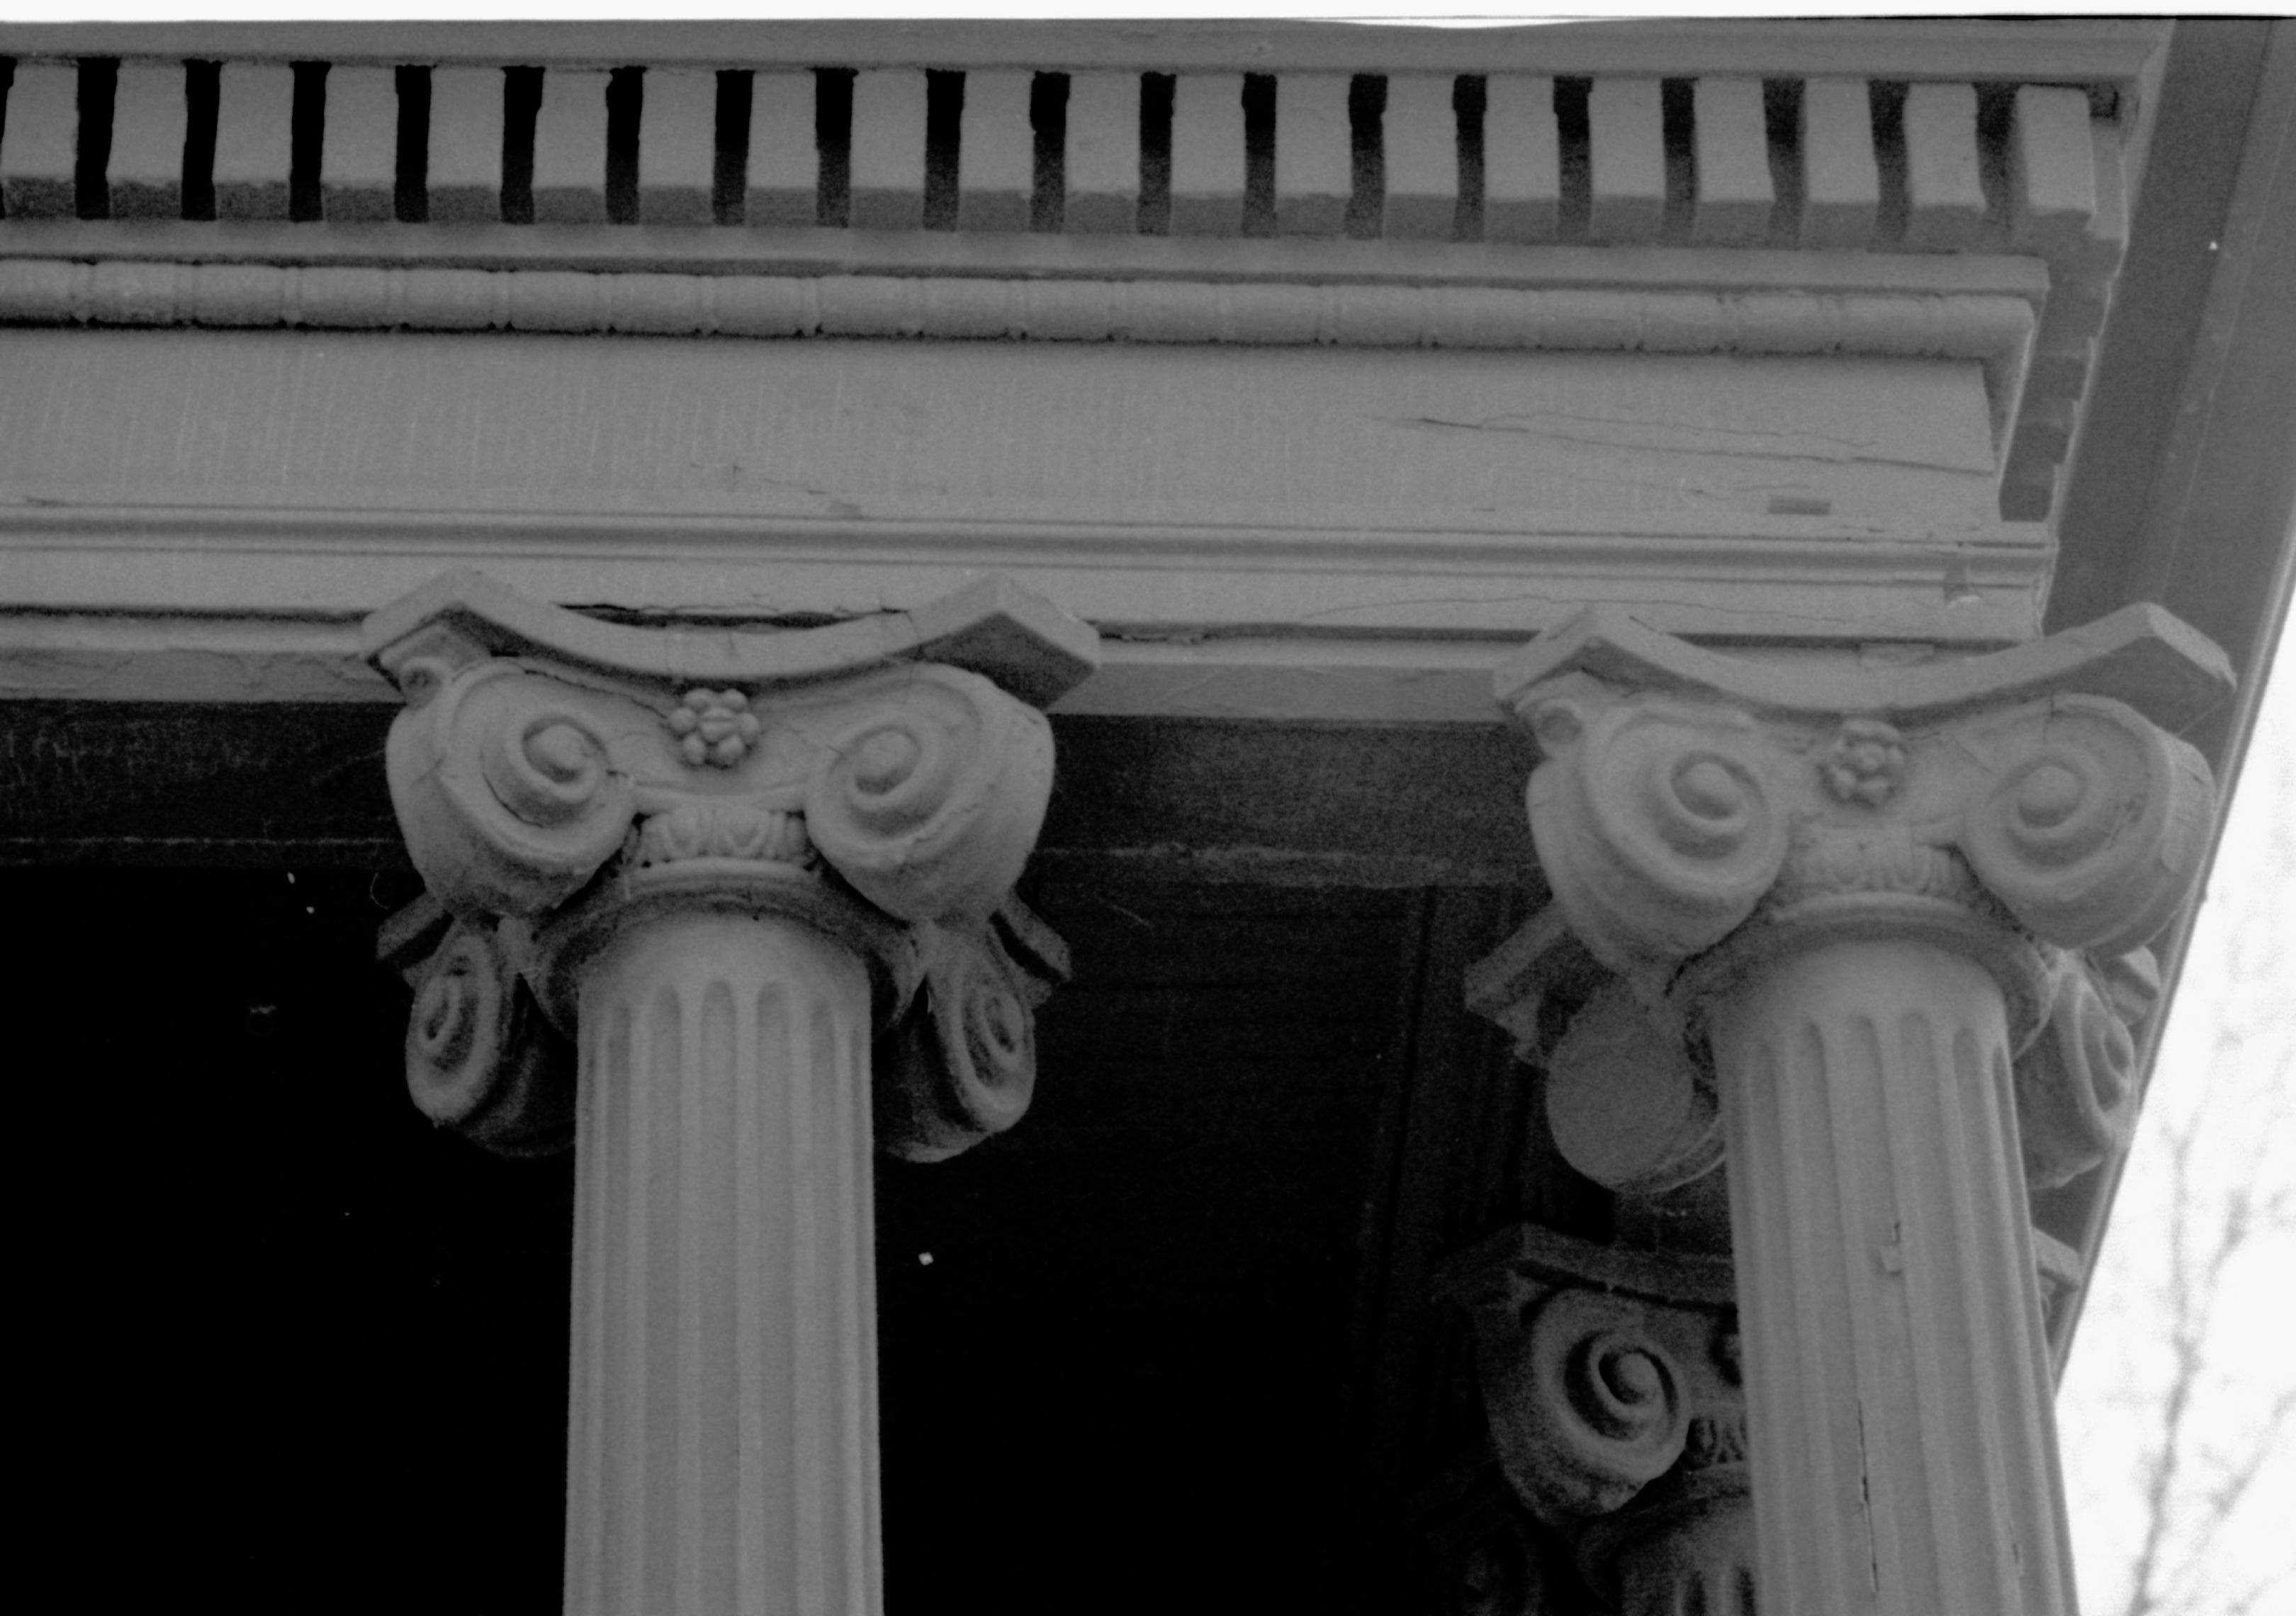 Dubois House Lincoln Home NHS- Dubois House HS-15, Dubois, Arnold, and Dean House Dubiois House, columns